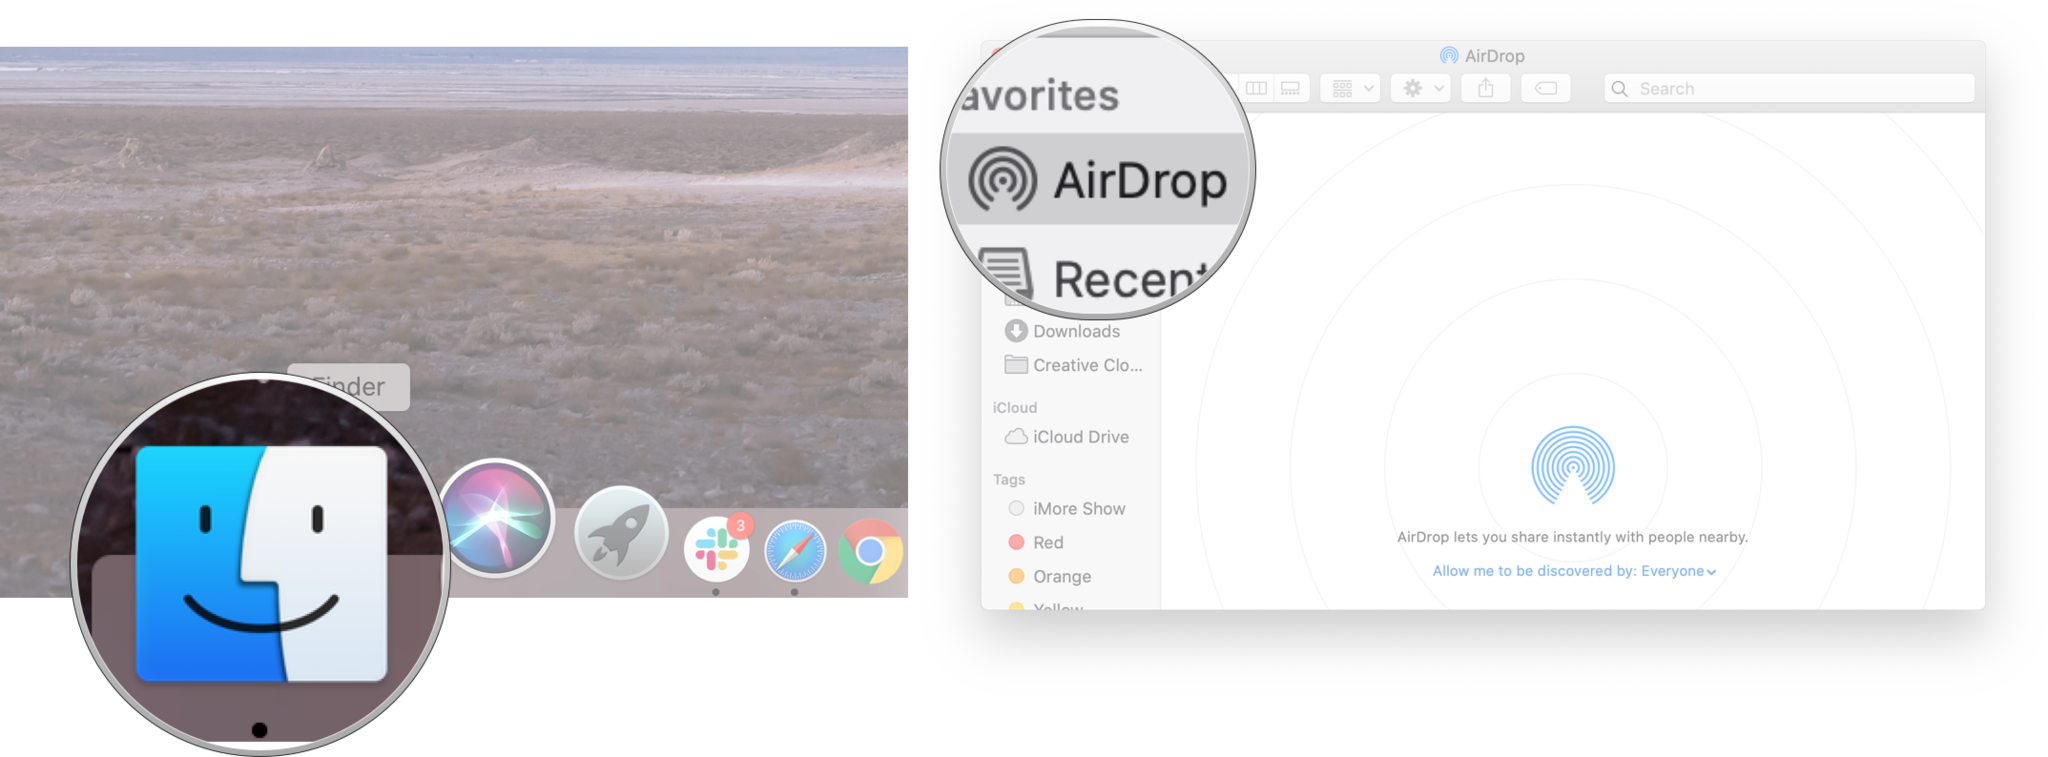 Menyesuaikan akses ke AirDrop di Mac: Luncurkan Finder, lalu klik AirDrop.